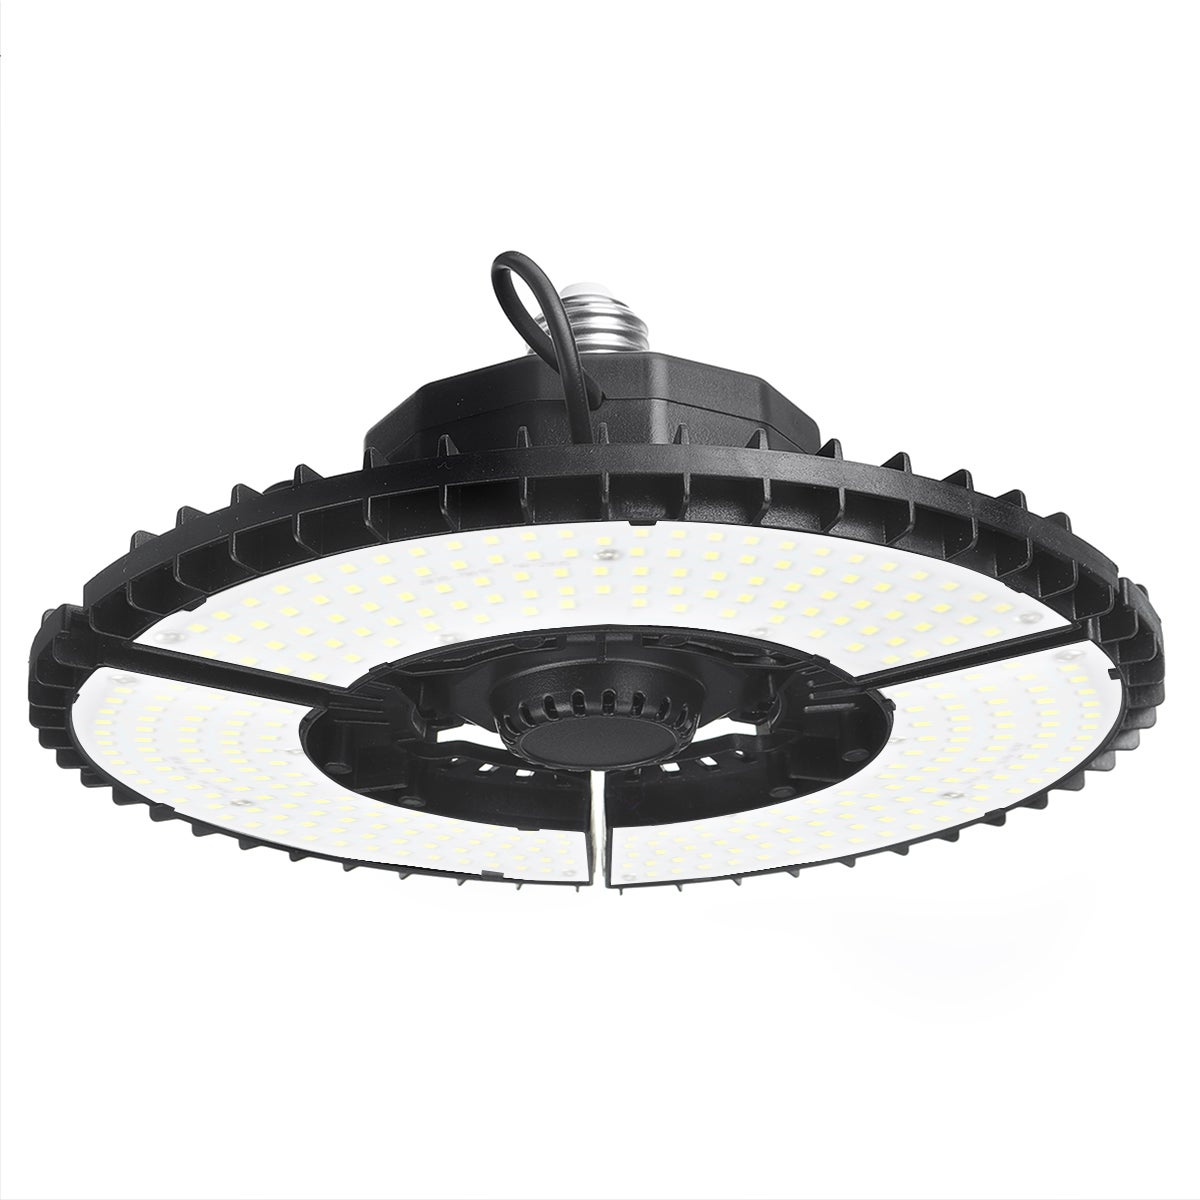 Pliage E27 Lampe à économie d'énergie LED Garage Lumière Lampe d'atelier